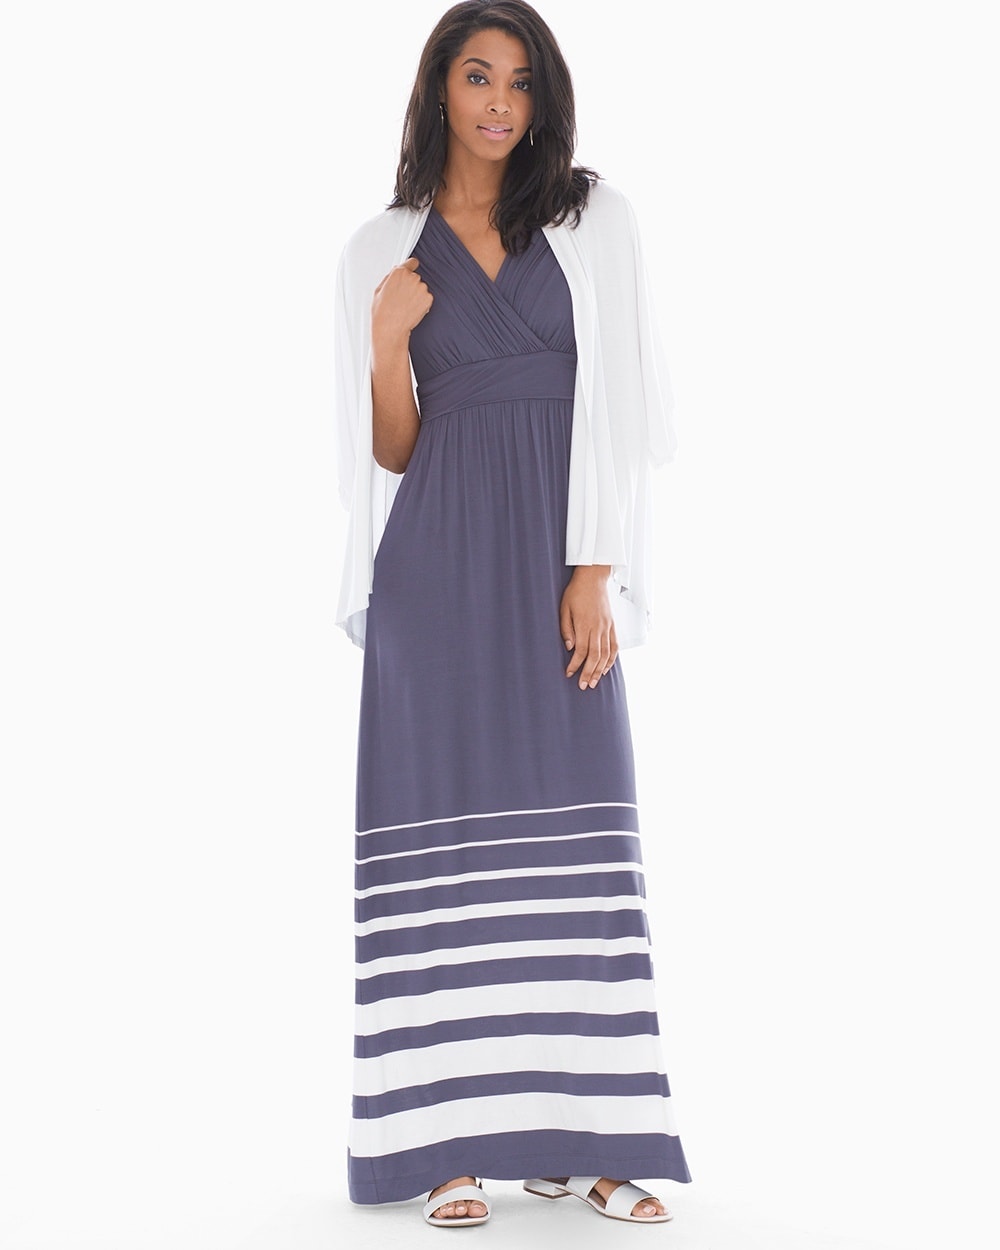 Shirred Bodice Maxi Dress Sanctuary Stripe Gray